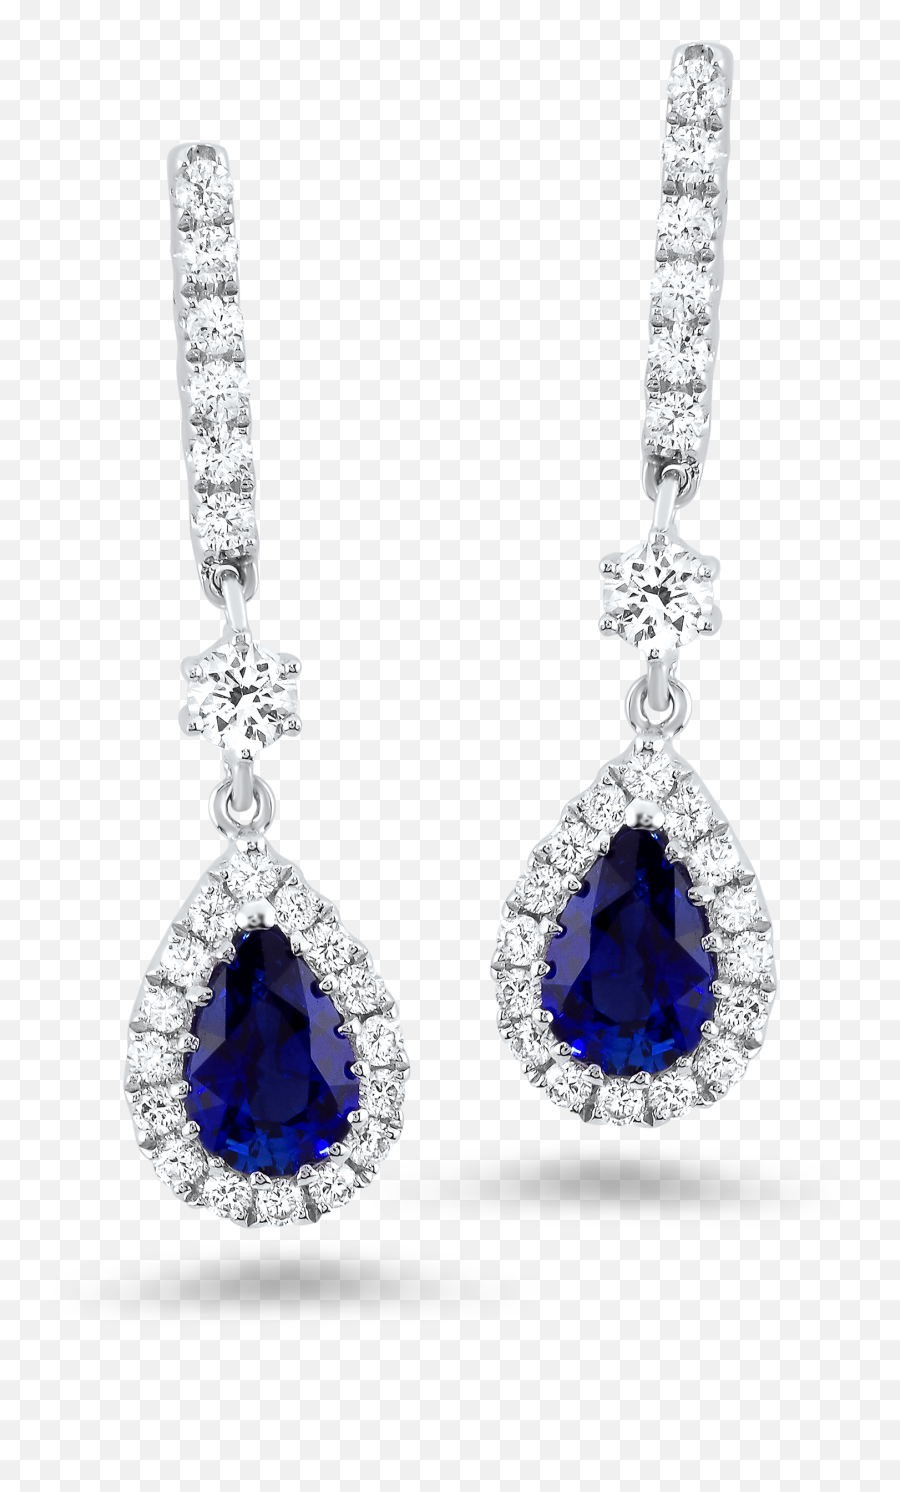 47 Carat Diamond Earrings - Earring Full Size Png Download Earring,Diamond Earring Png